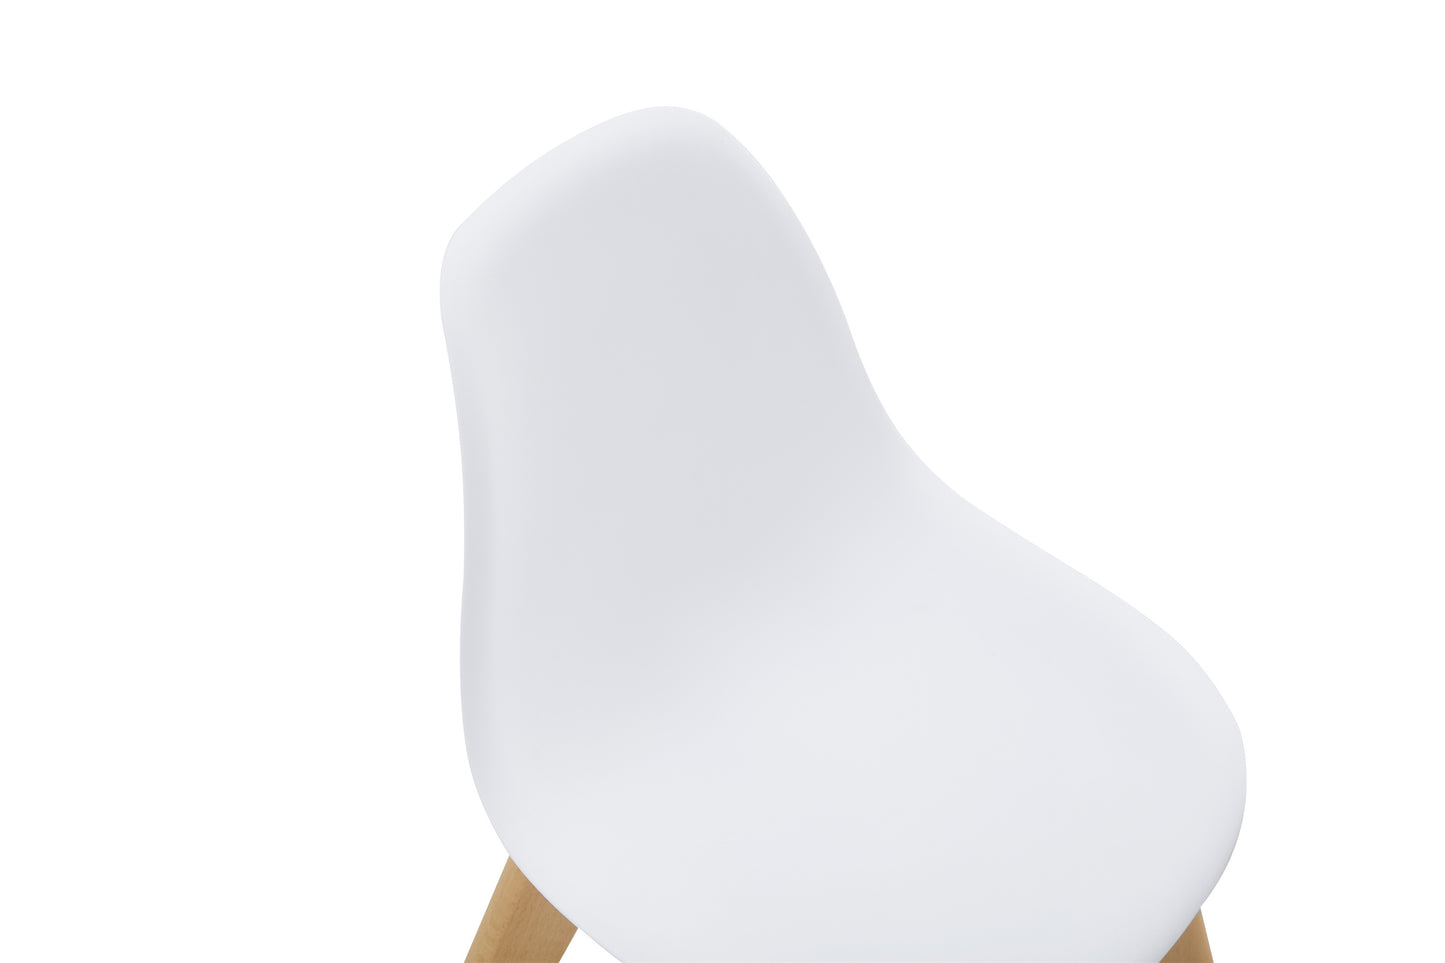 BB chair ,wood leg; Modern Kids Chair (Set of 2)  WHITE, 2 pcs per set